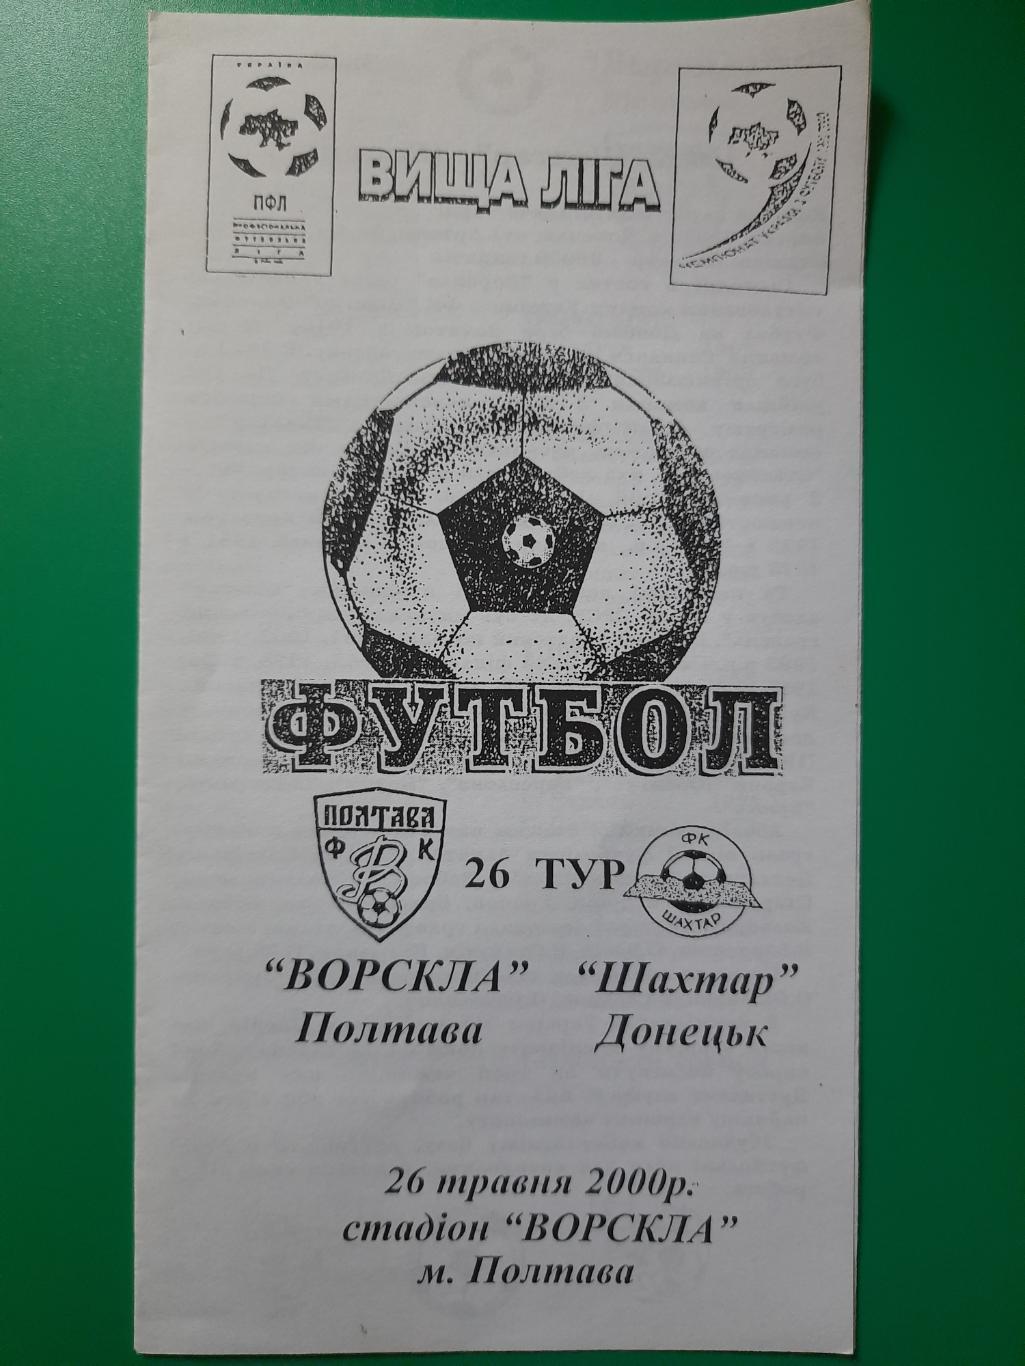 Ворскла Полтава - Шахтер Донецк 26.05.2000